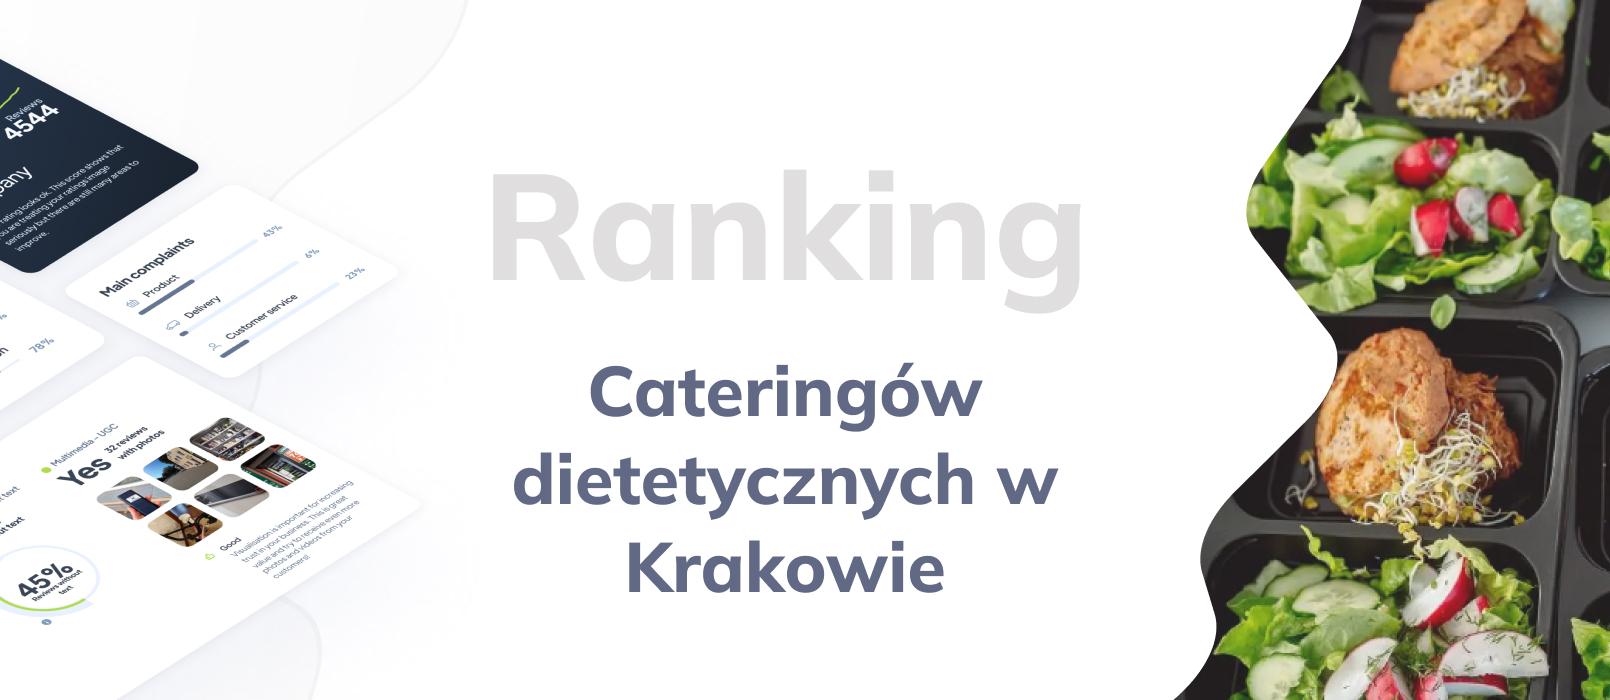 Cateringi dietetyczne w Krakowie - ranking TOP 10 